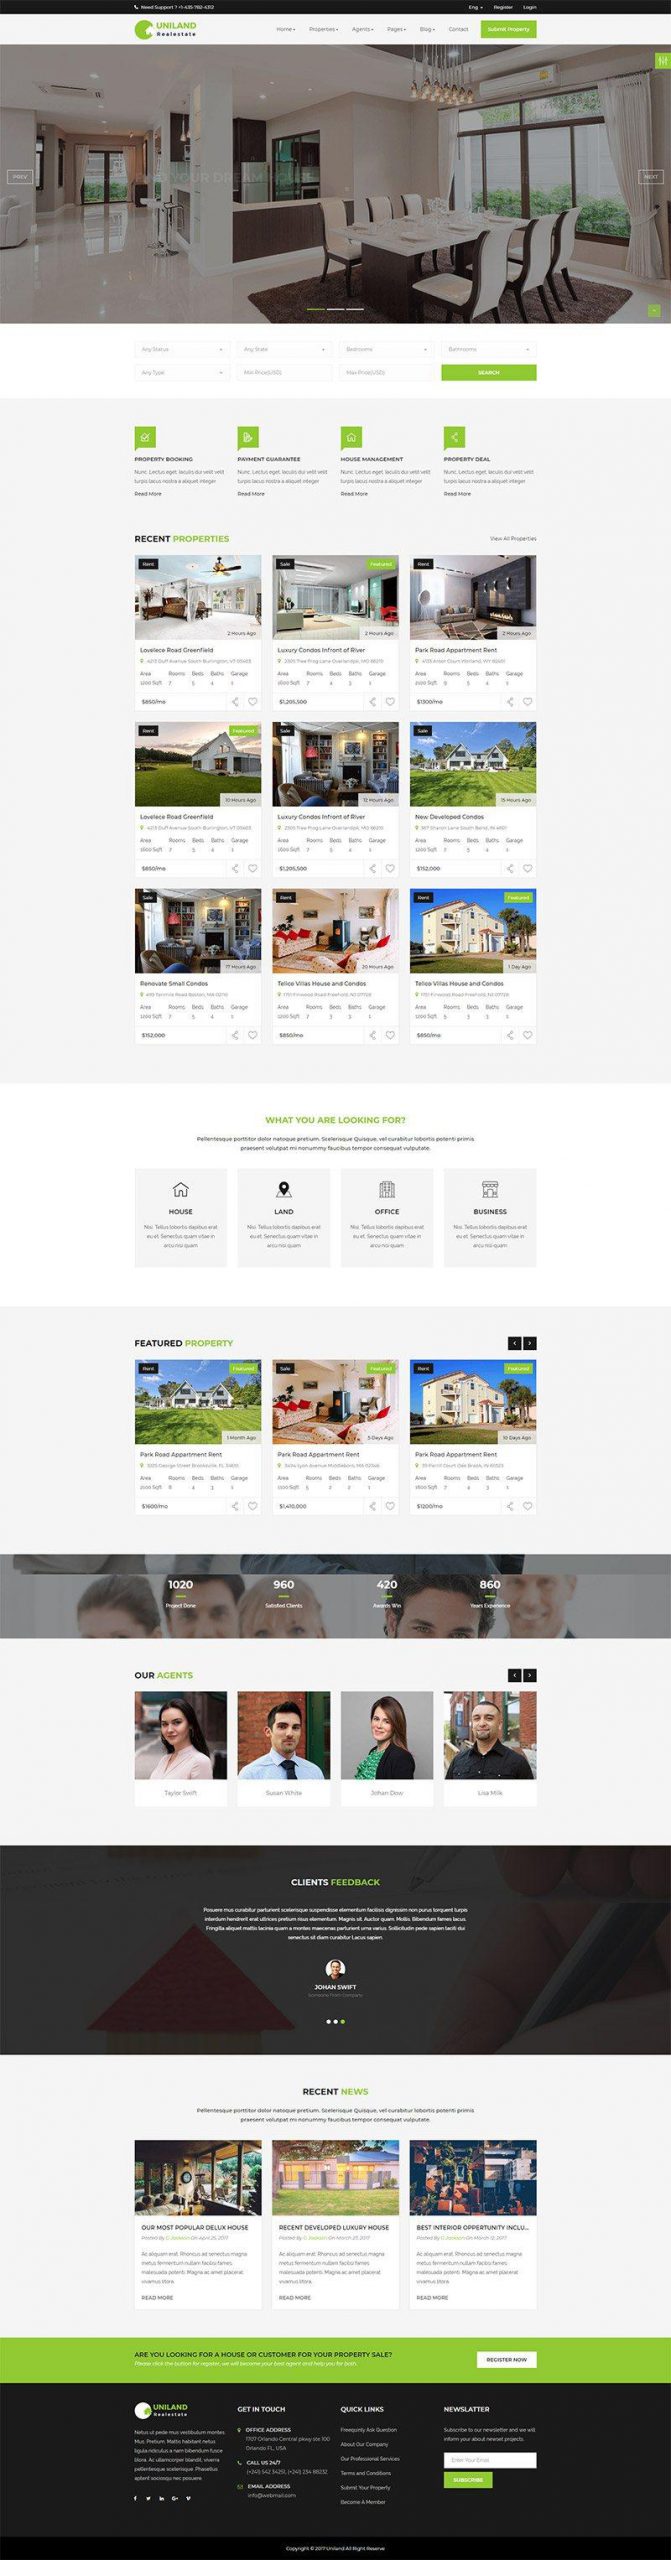 Giao diện website bất động sản Uniland